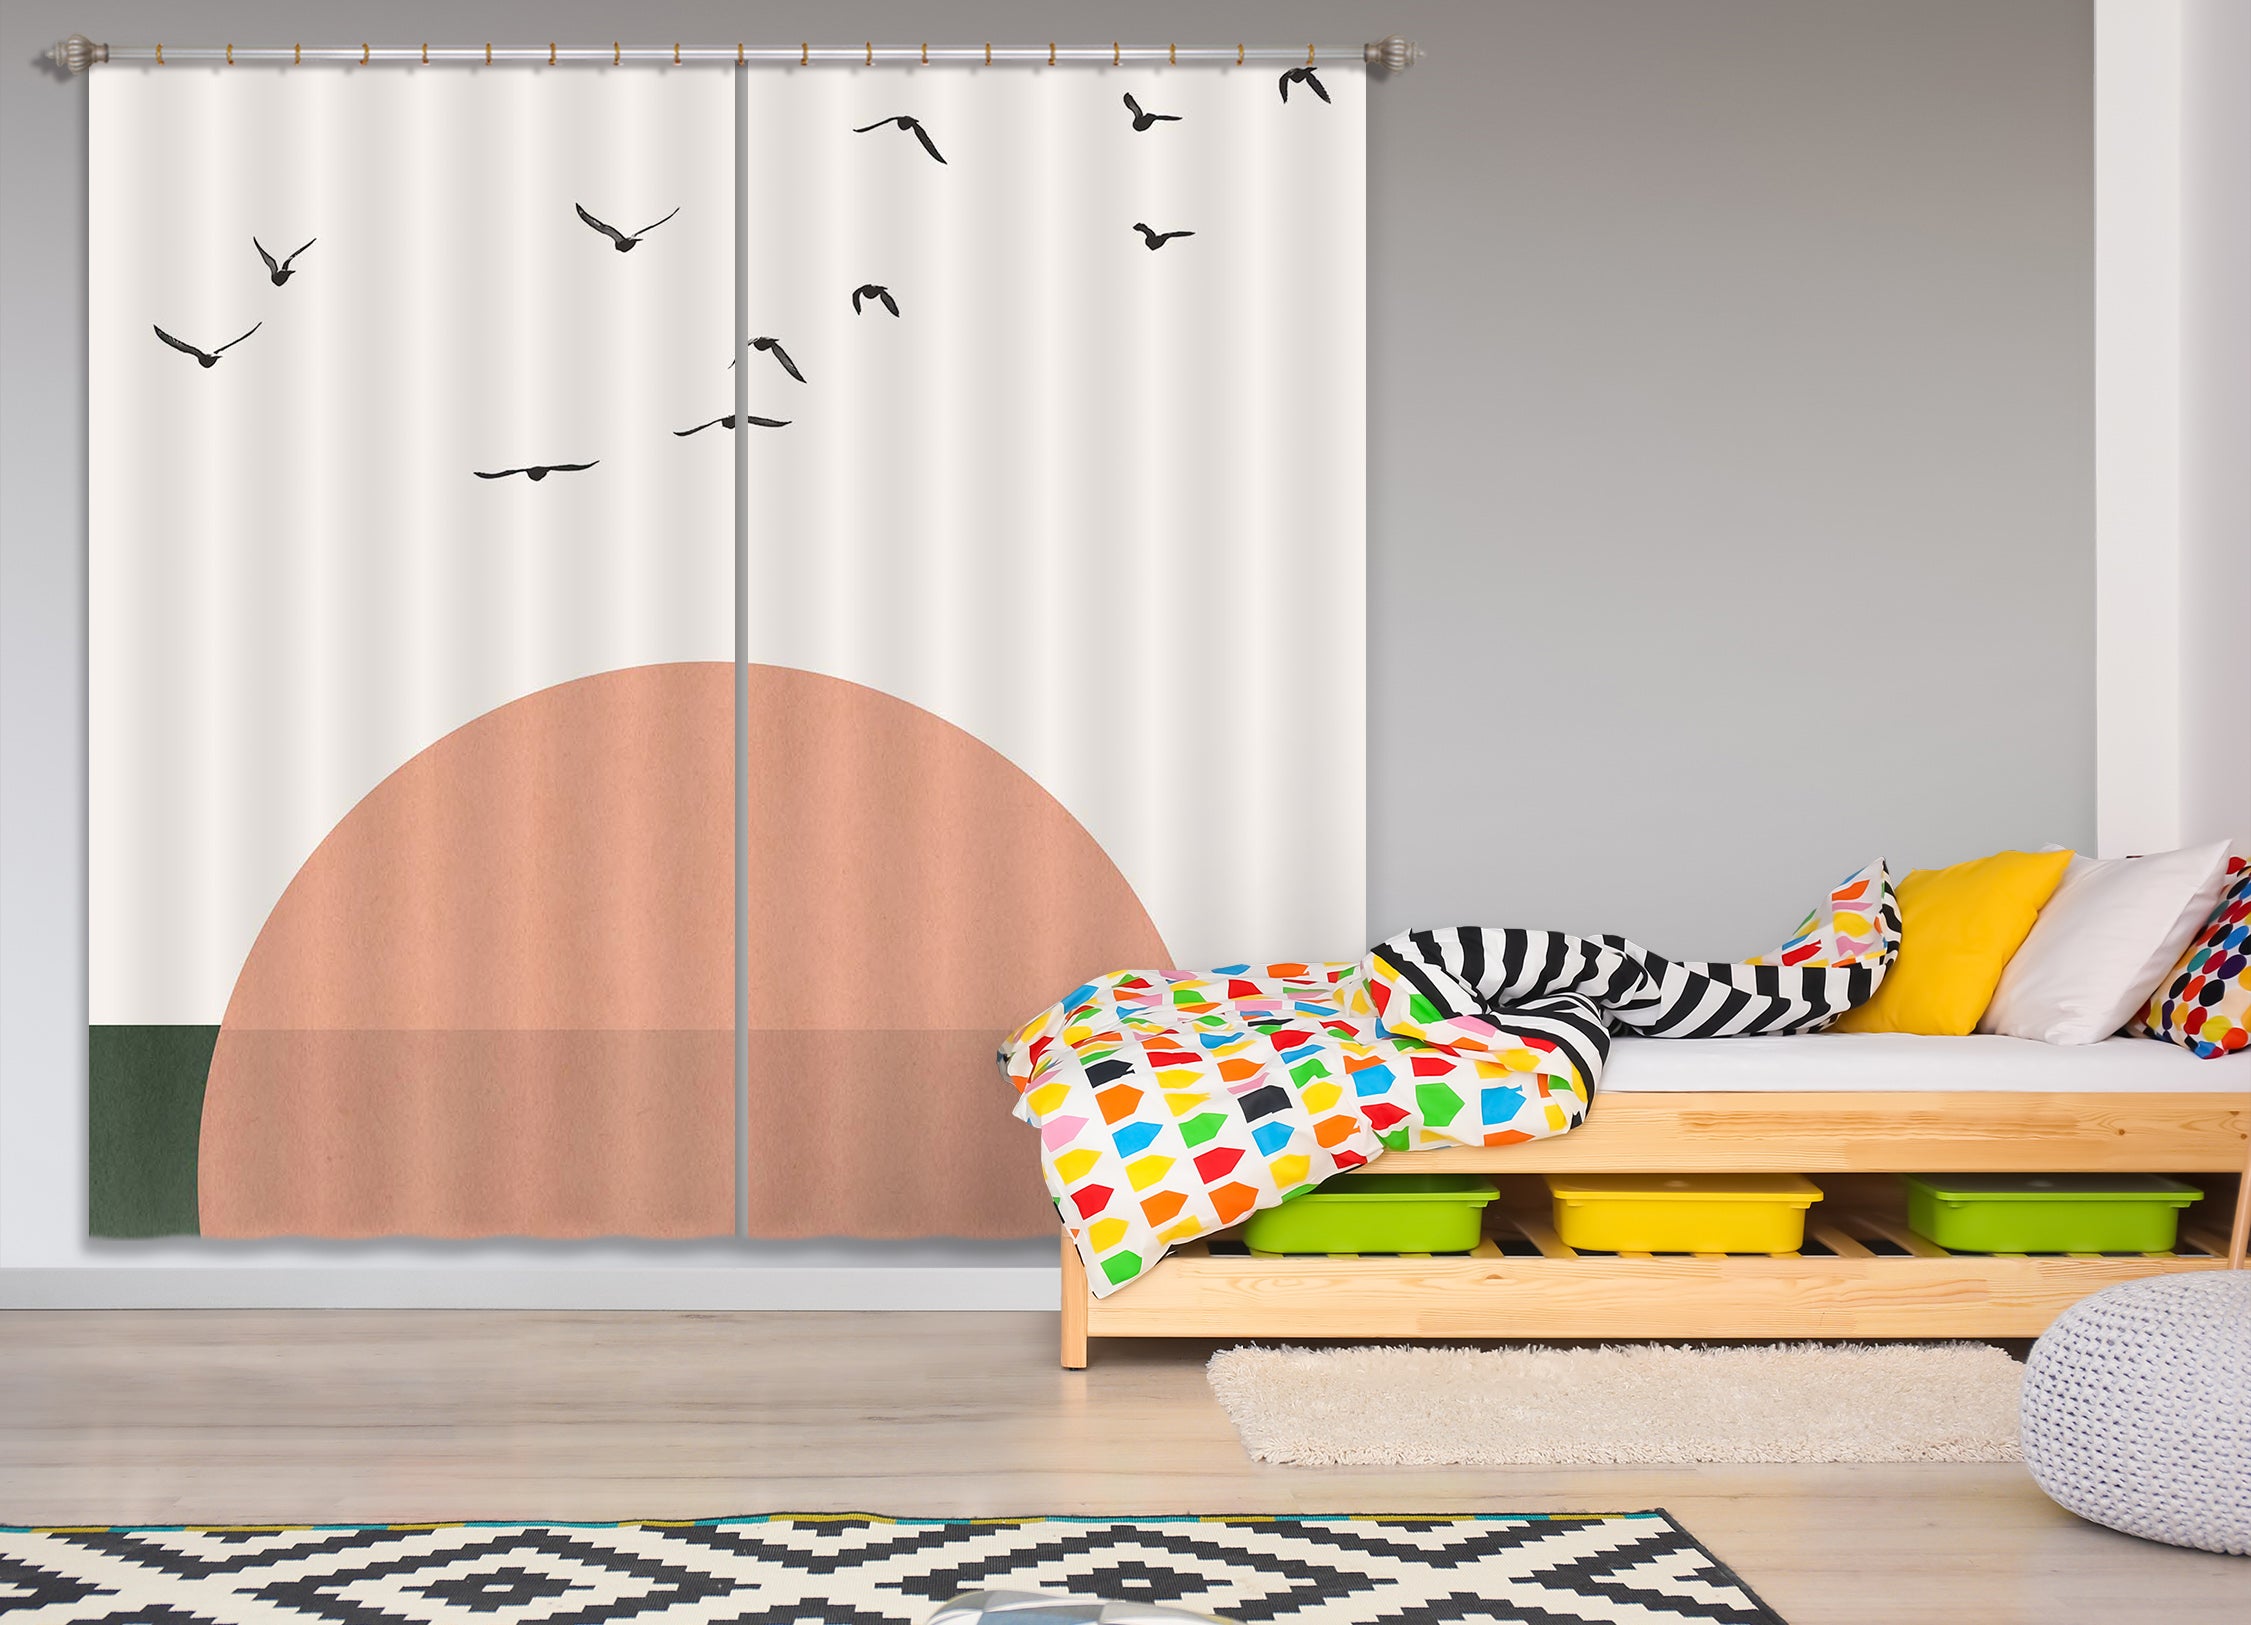 3D Rising 049 Boris Draschoff Curtain Curtains Drapes